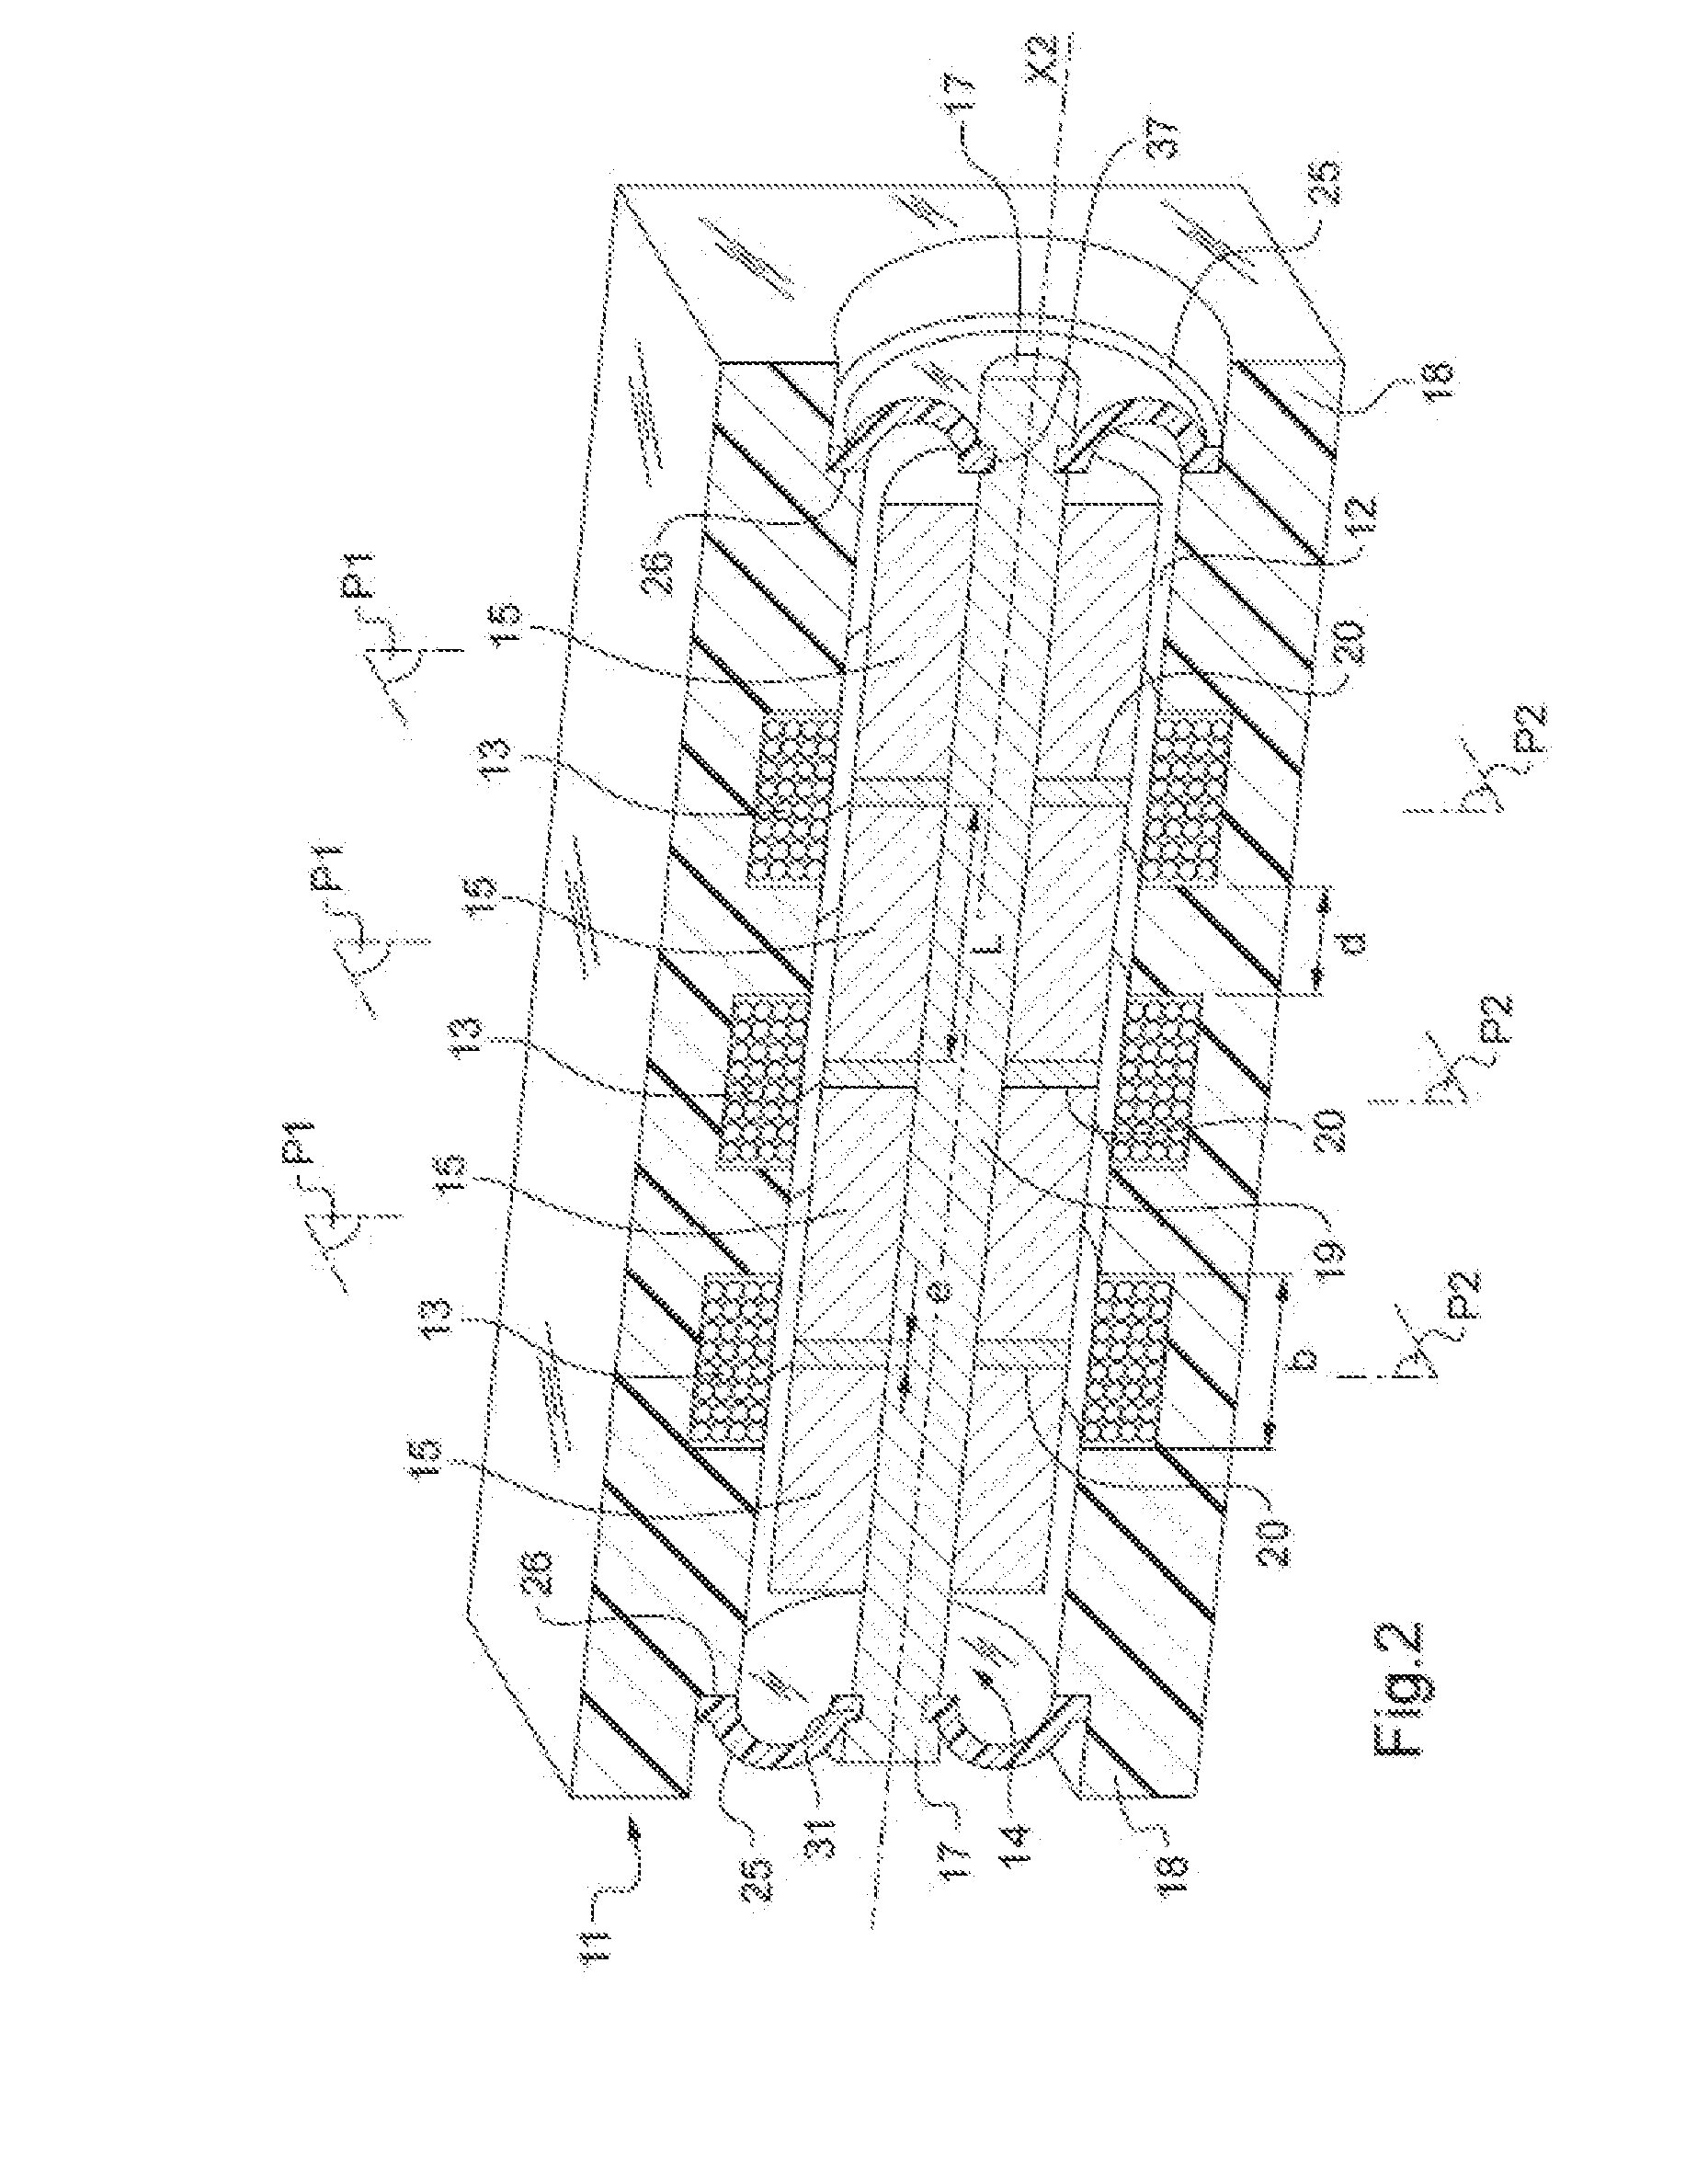 Miniature linear vibrotactile actuator